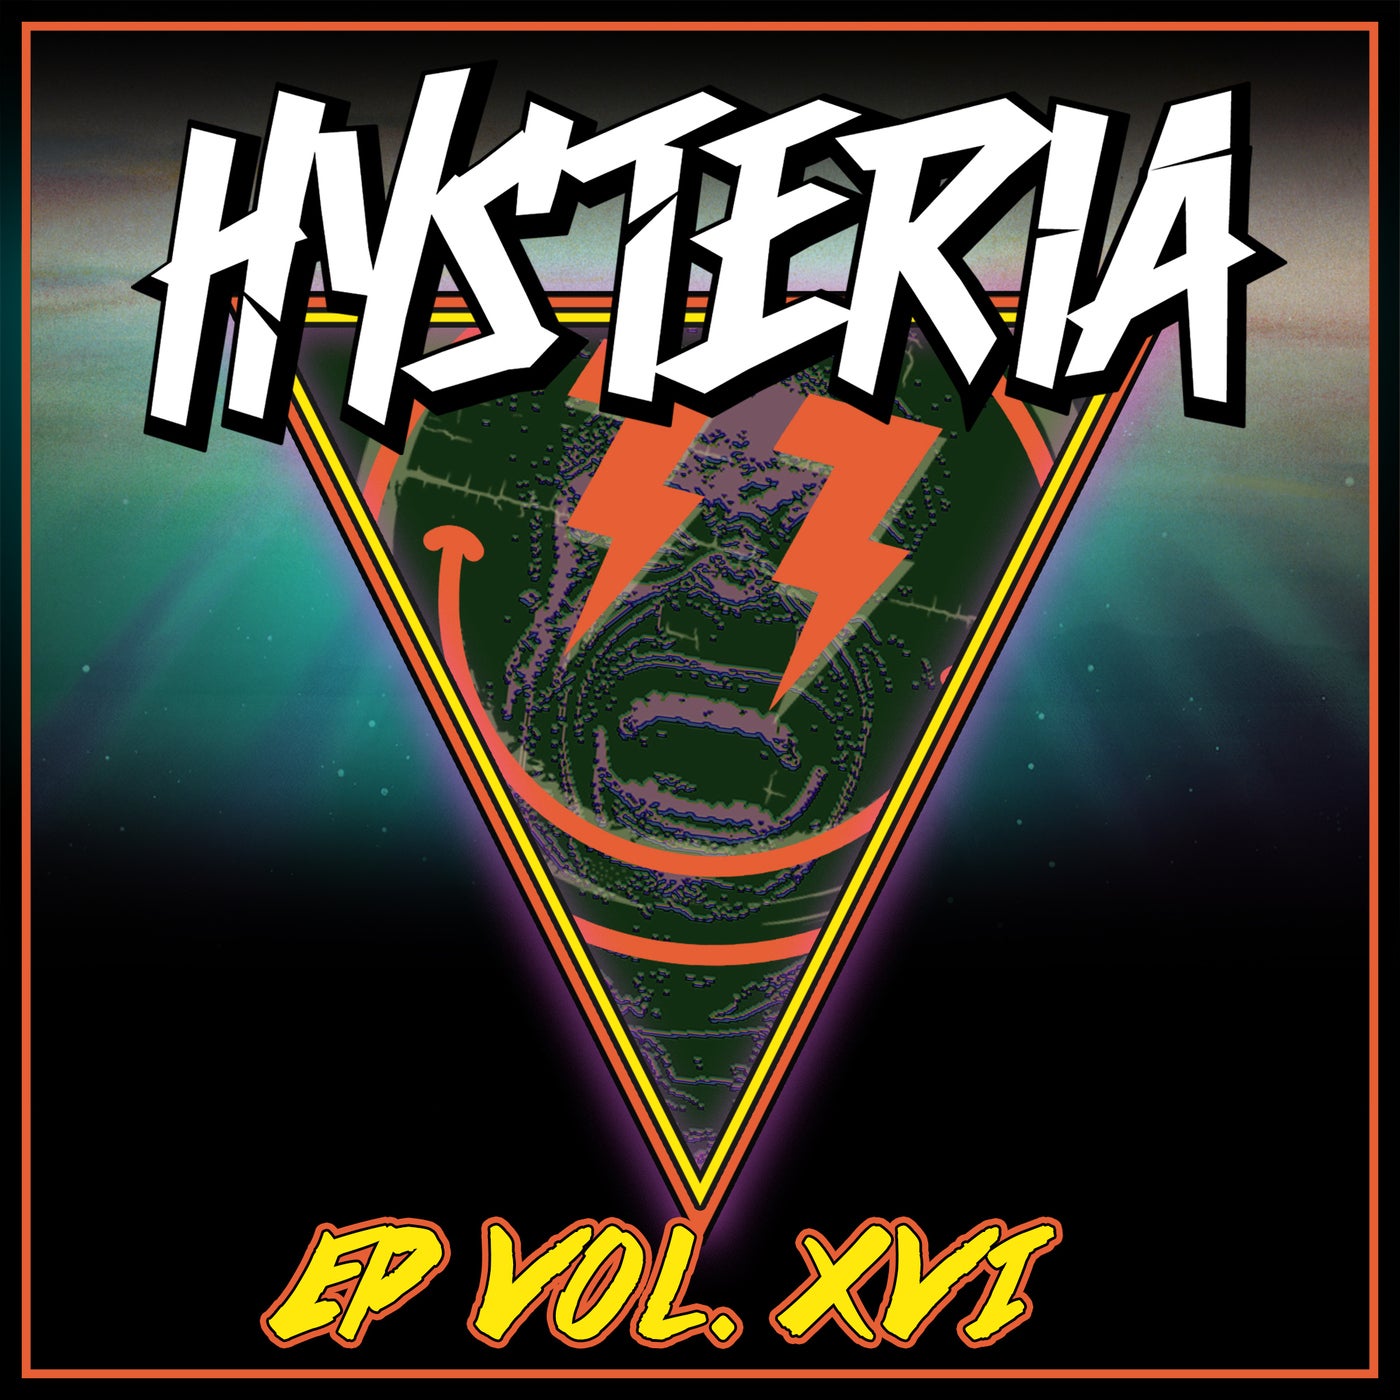 Hysteria EP Vol. 16